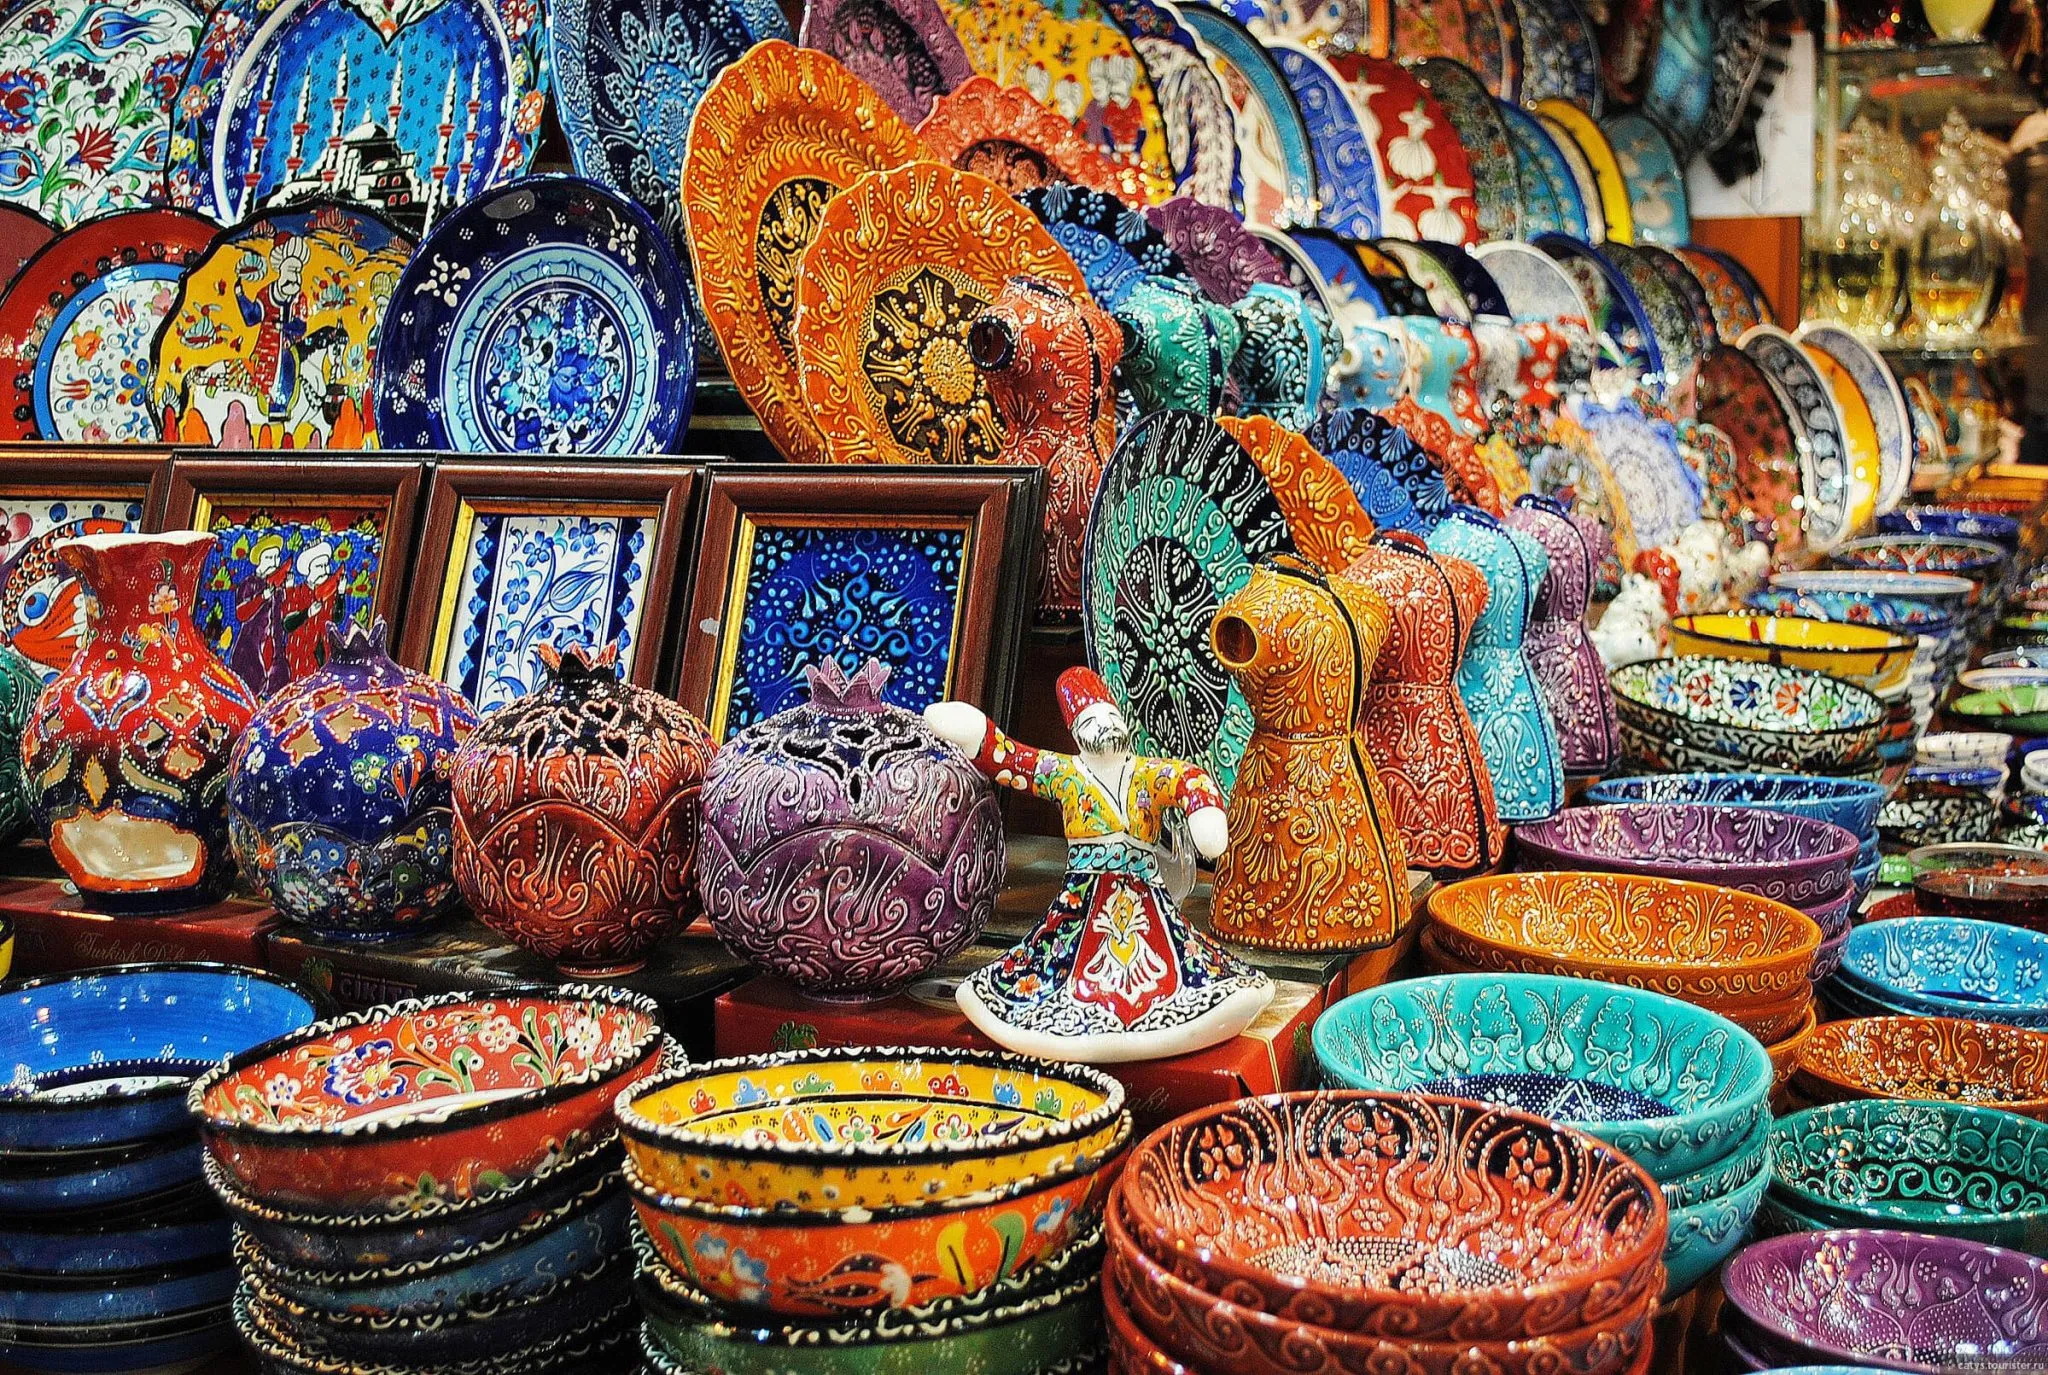 ТОП-10 товаров, которые любят покупать русские туристы в Турции